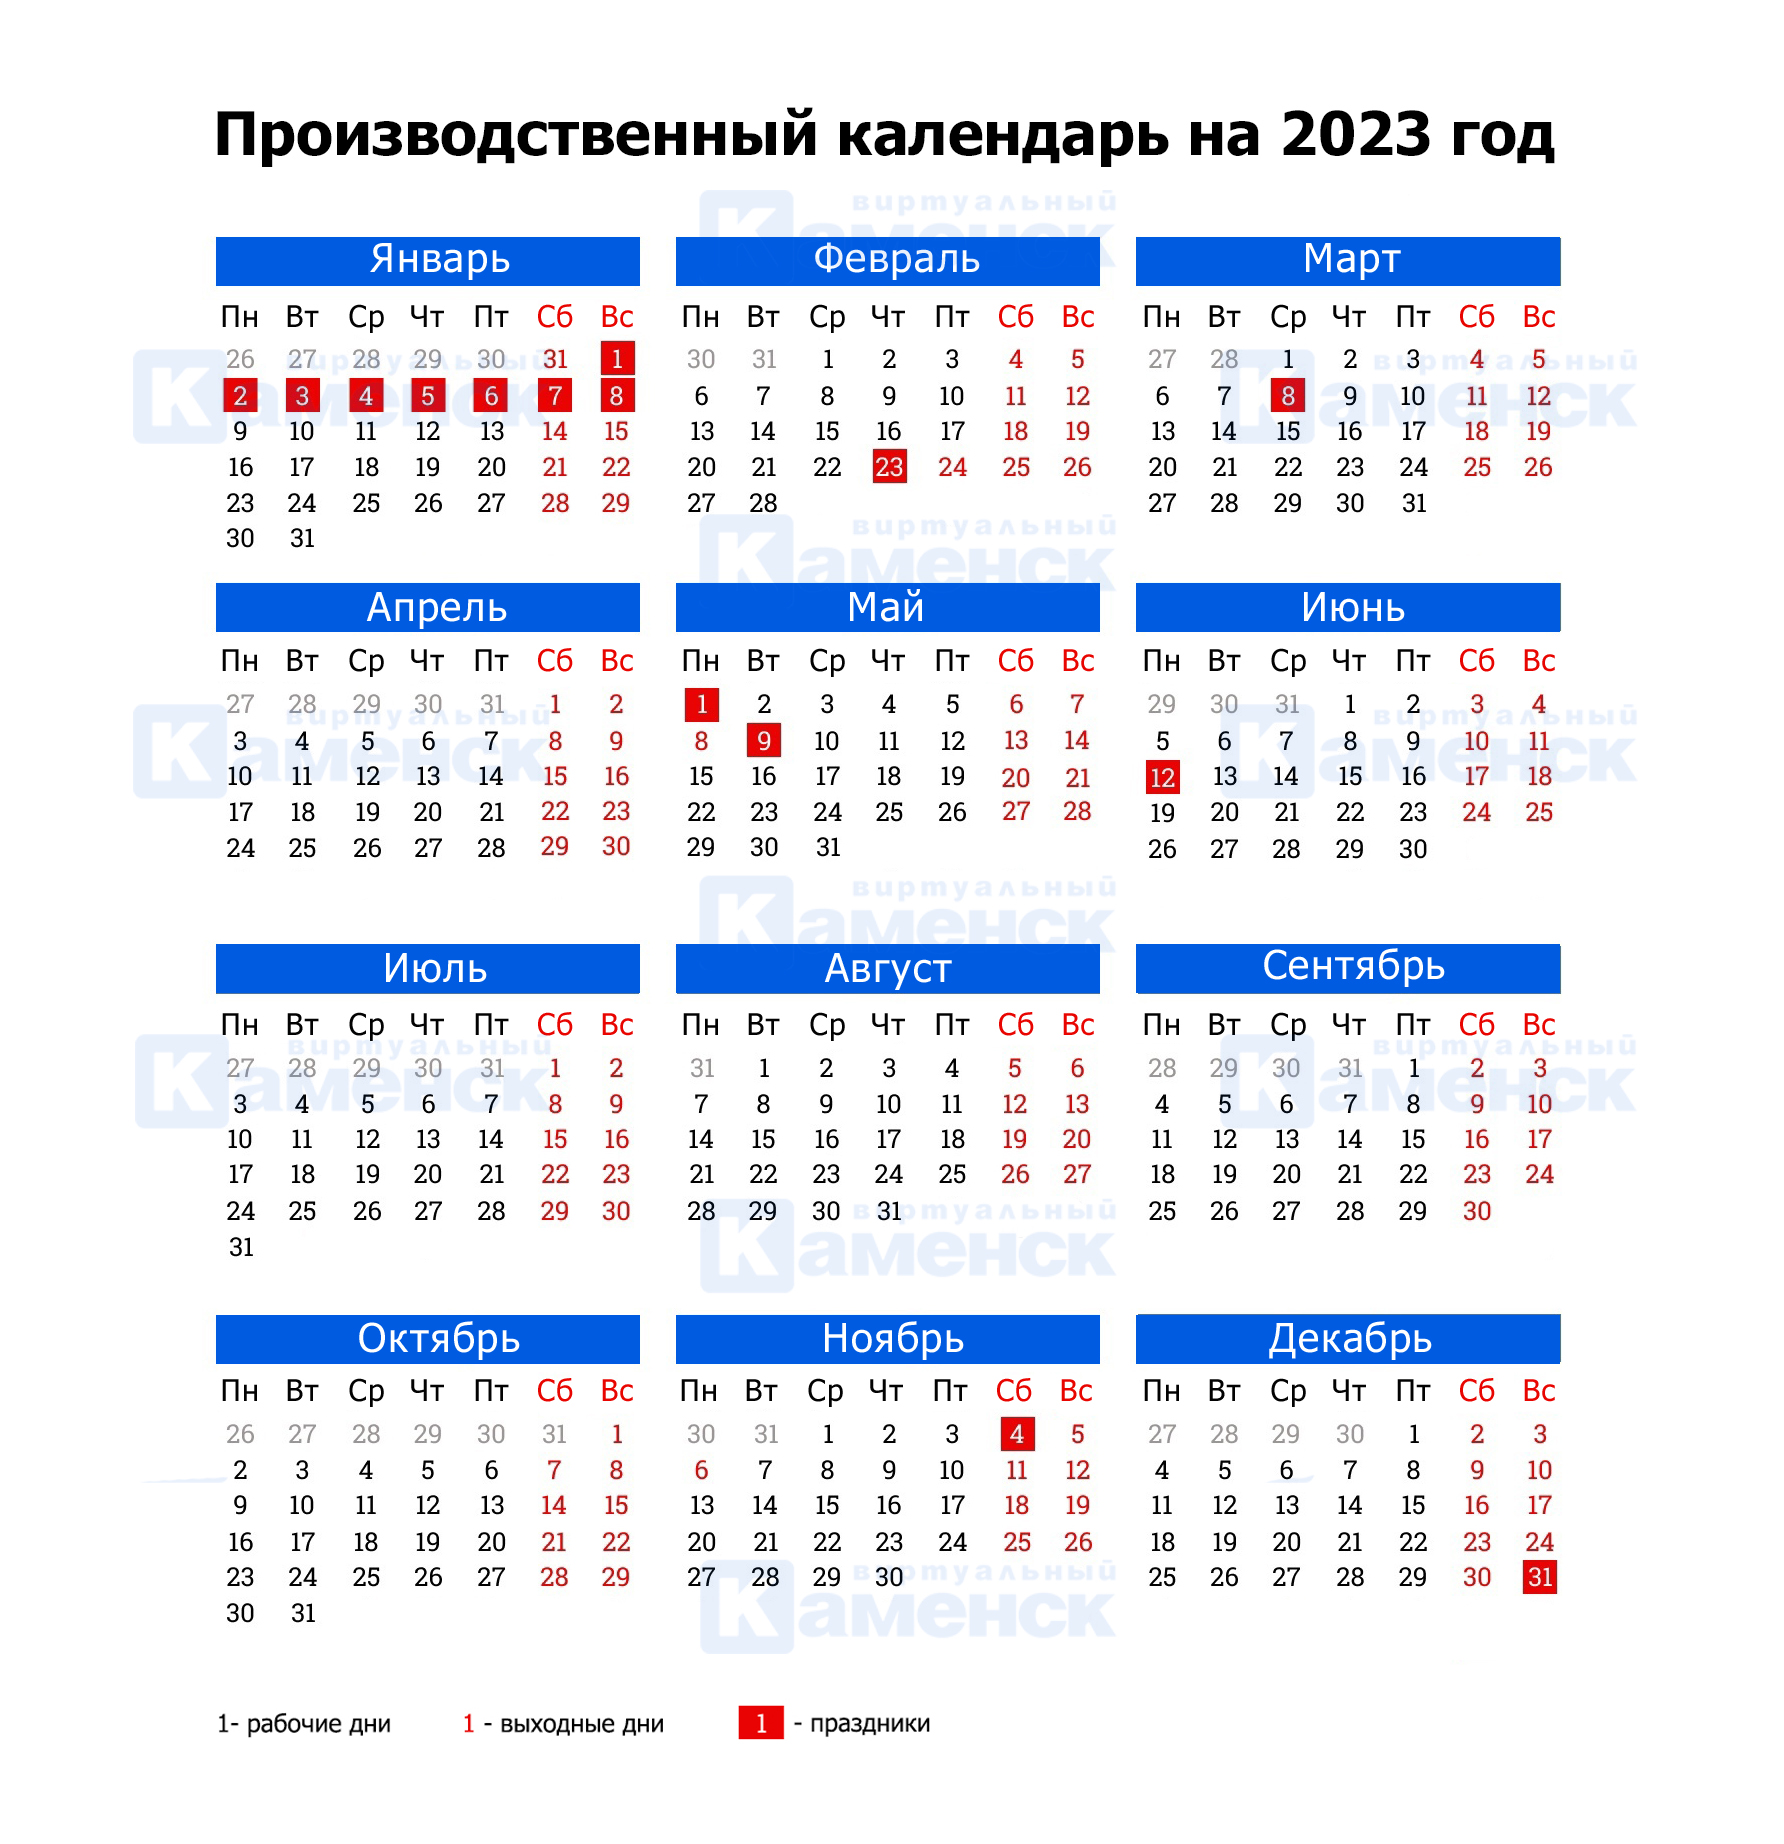 Рабочий календарь 2023 год. Производственный календарь на 2023 год. Рабочий календарь на 2023 год. Производственный на 2023 год. Производственный календарь февраль 2023.